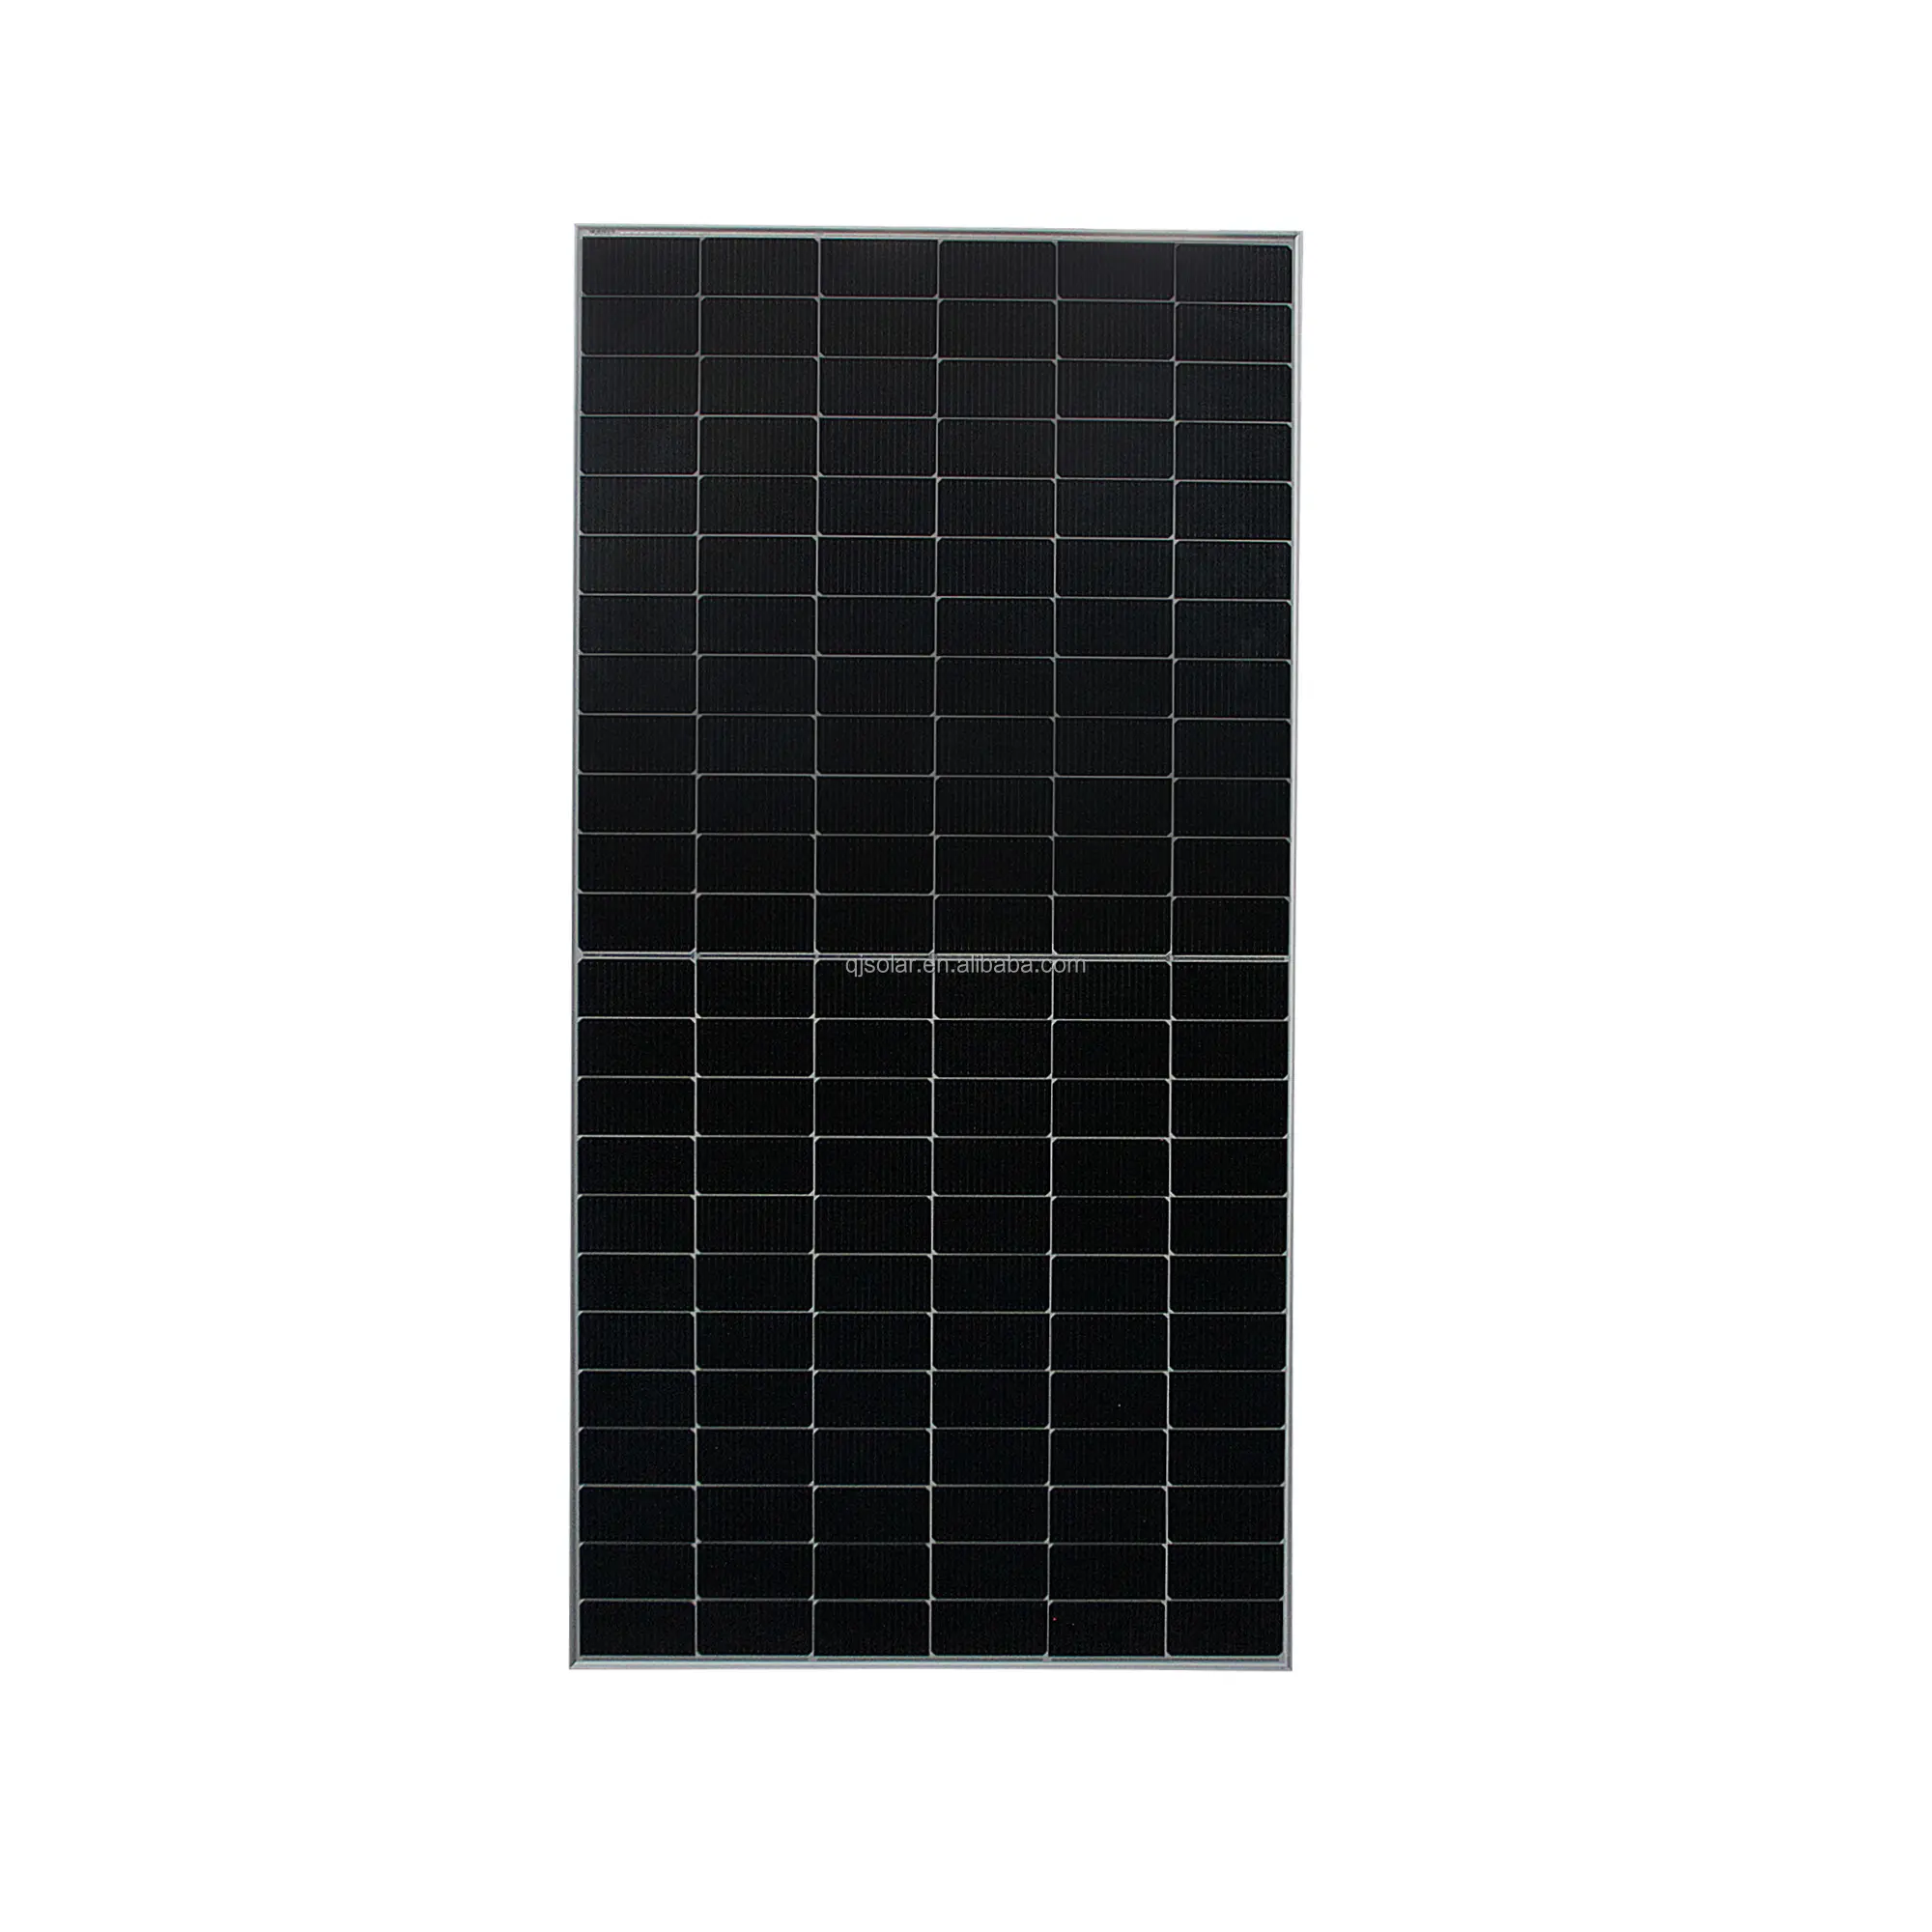 Qjpv tấm năng lượng mặt trời 585Watt cao hiệu quả Mono quang điện 555W 560W 565W 575W 580W 585W n-loại Topcon tấm pin mặt trời